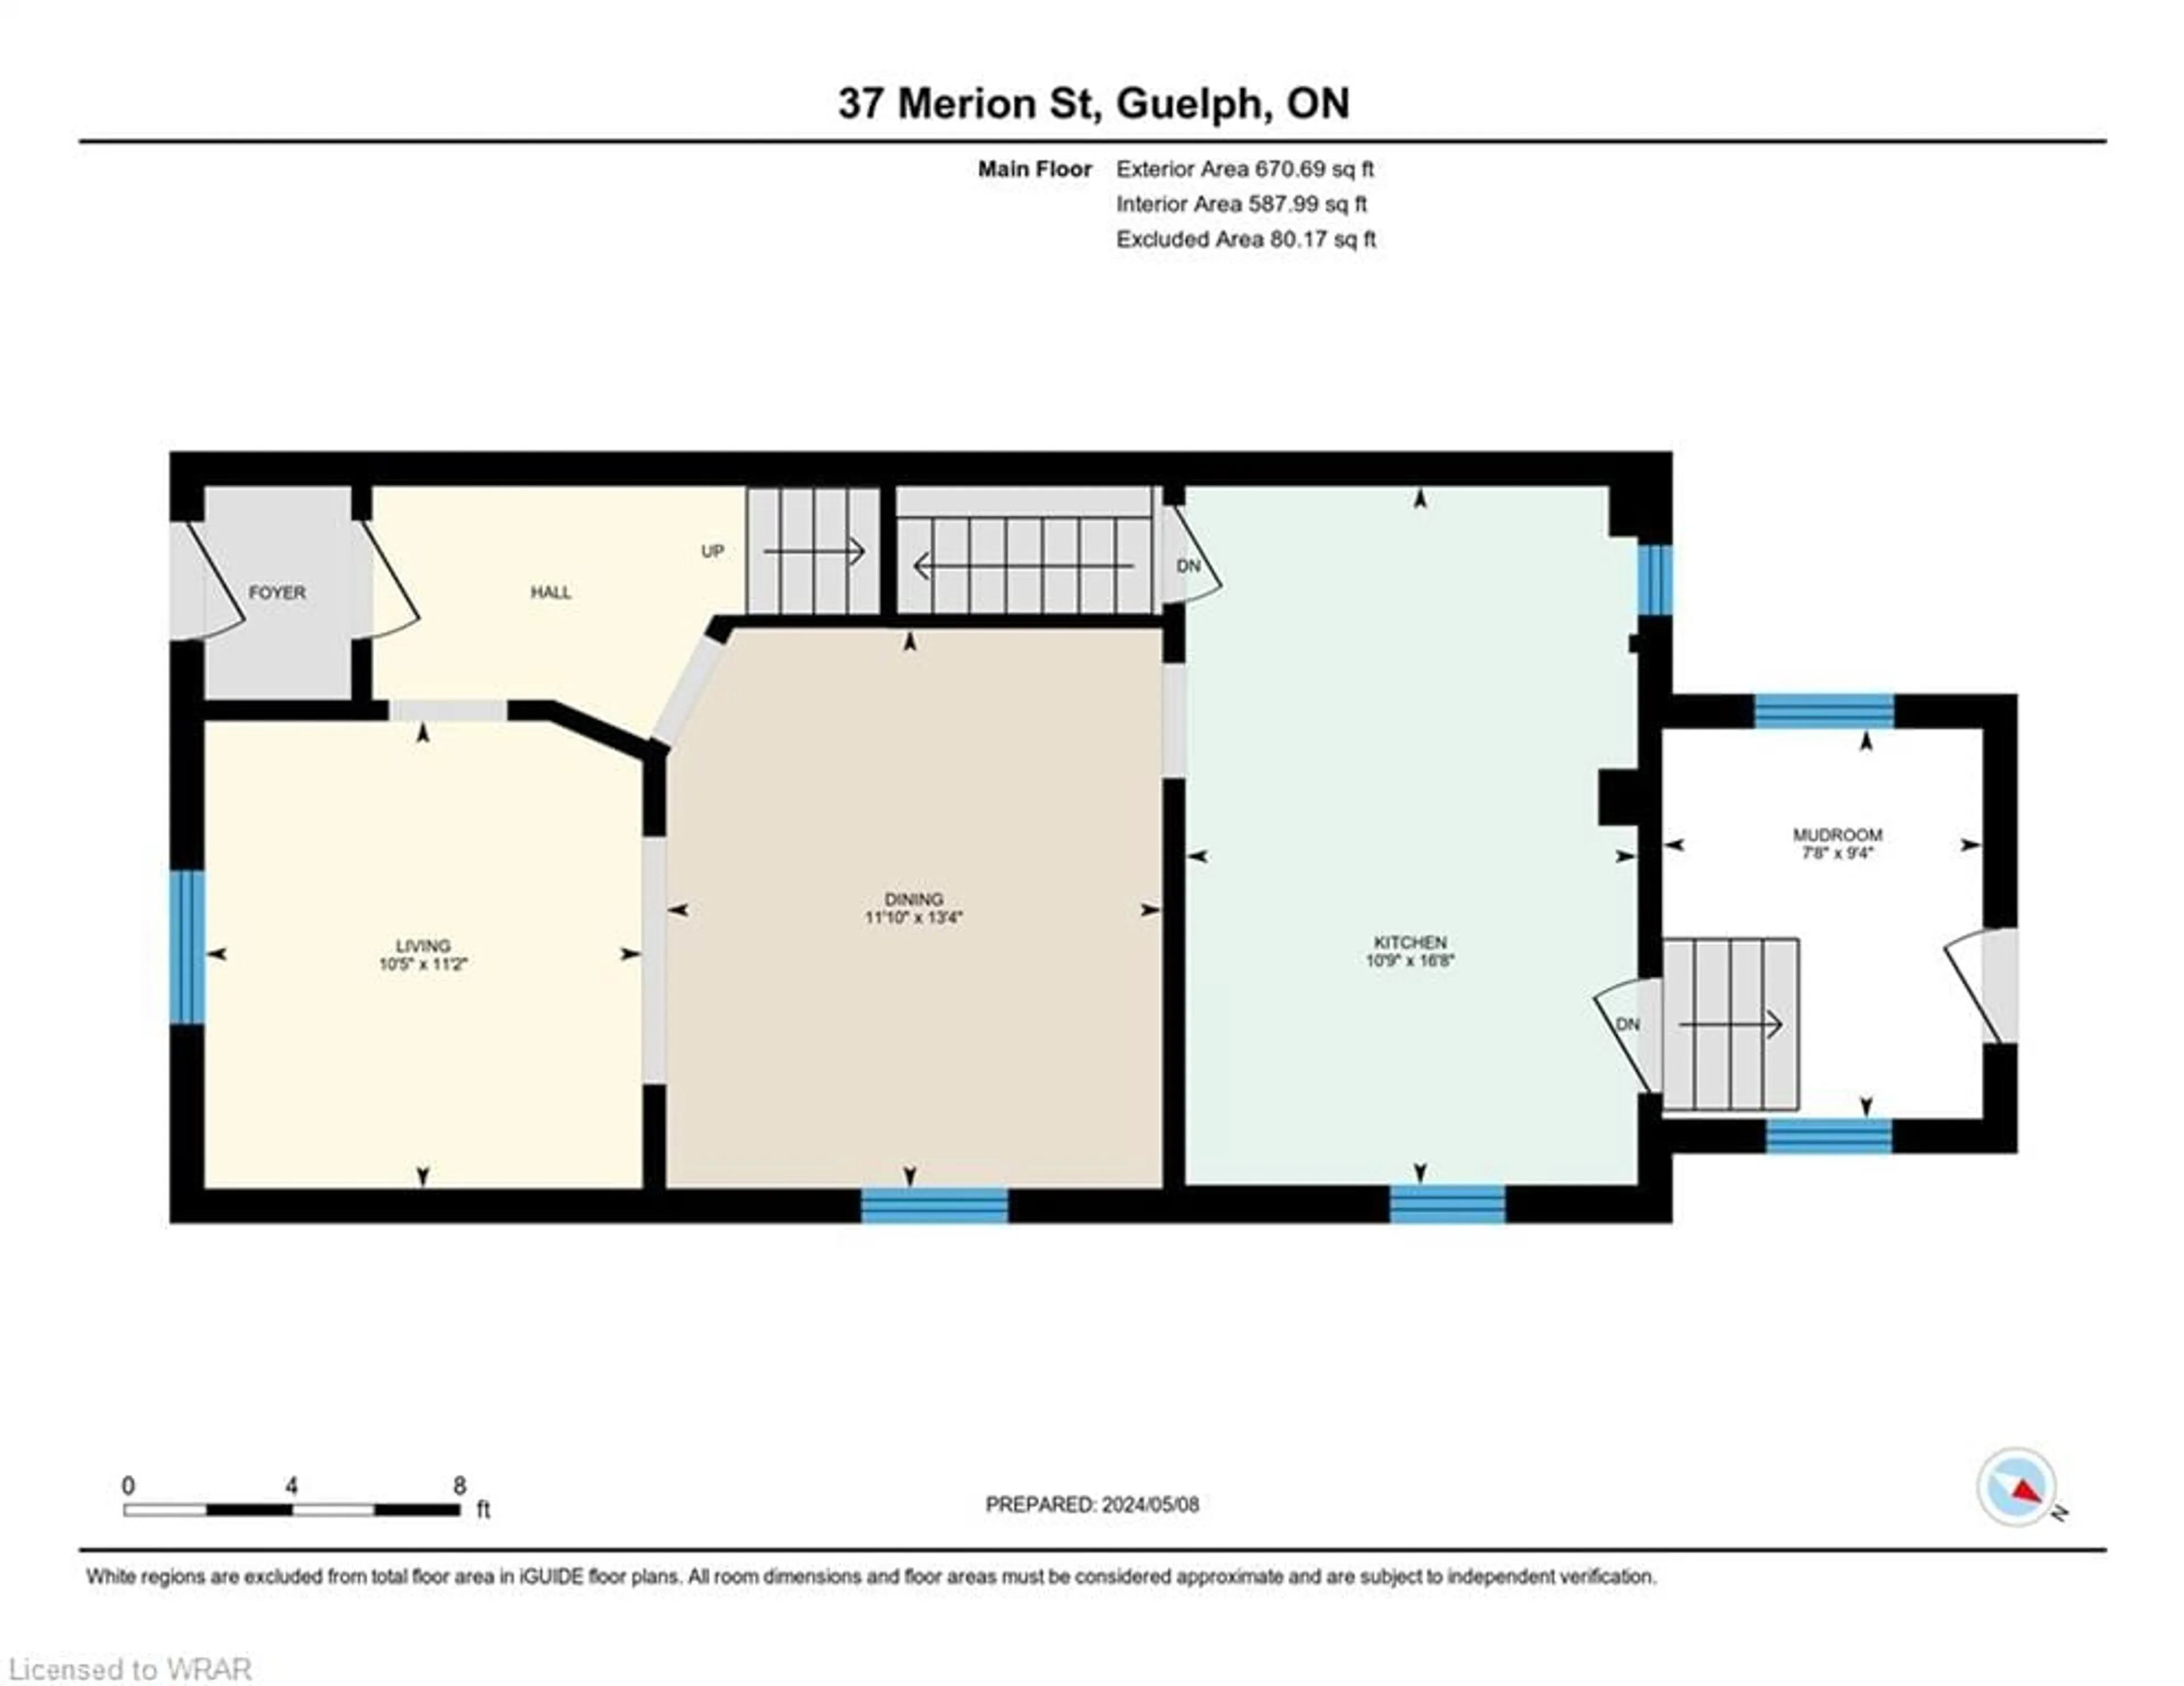 Floor plan for 37 Merion St, Guelph Ontario N1H 2L9